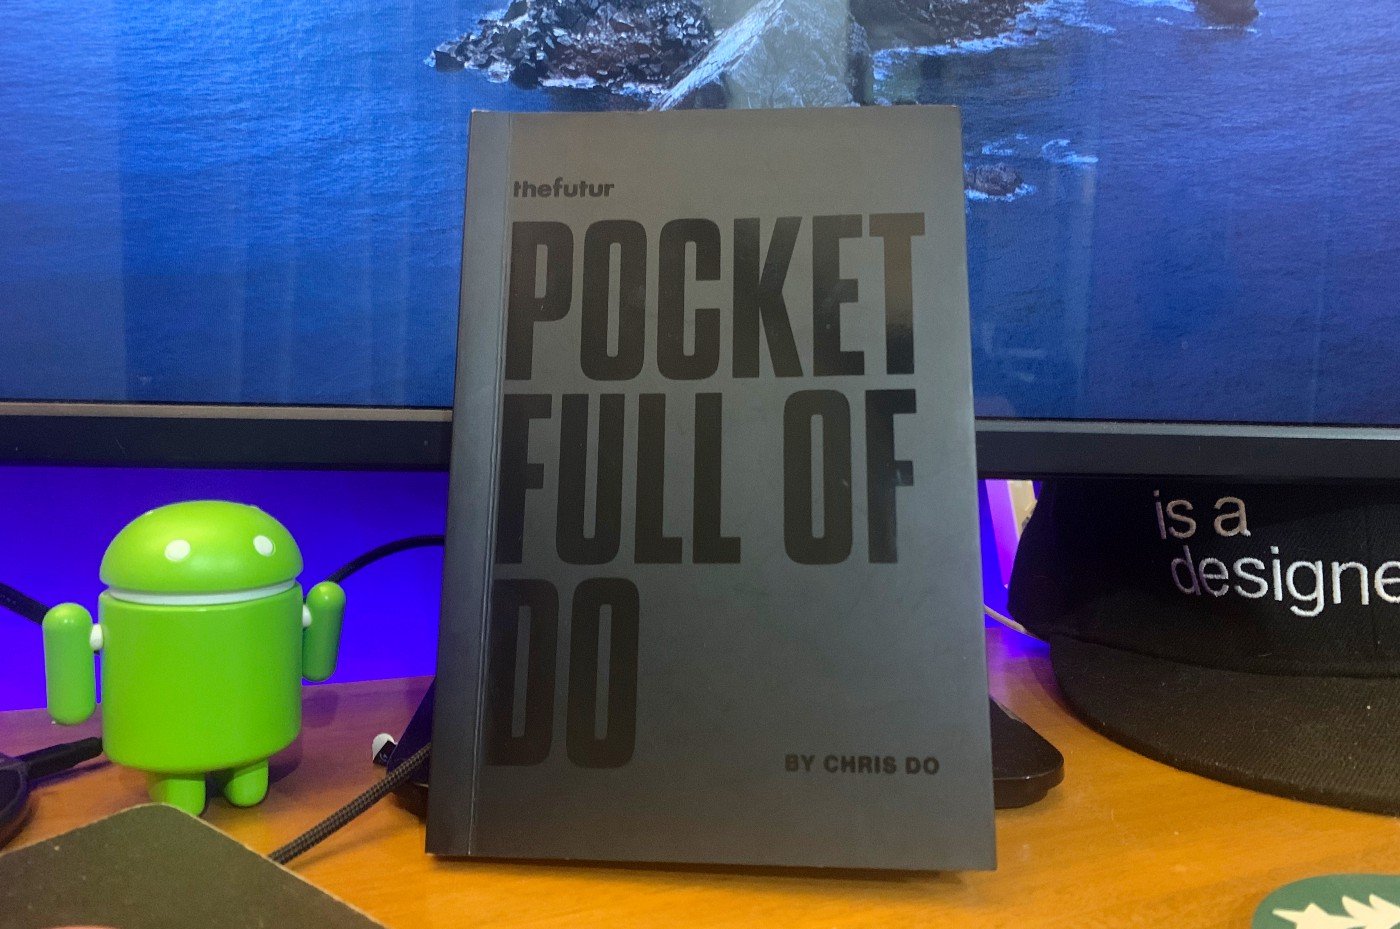 Pocket Full of Do by Chris Do